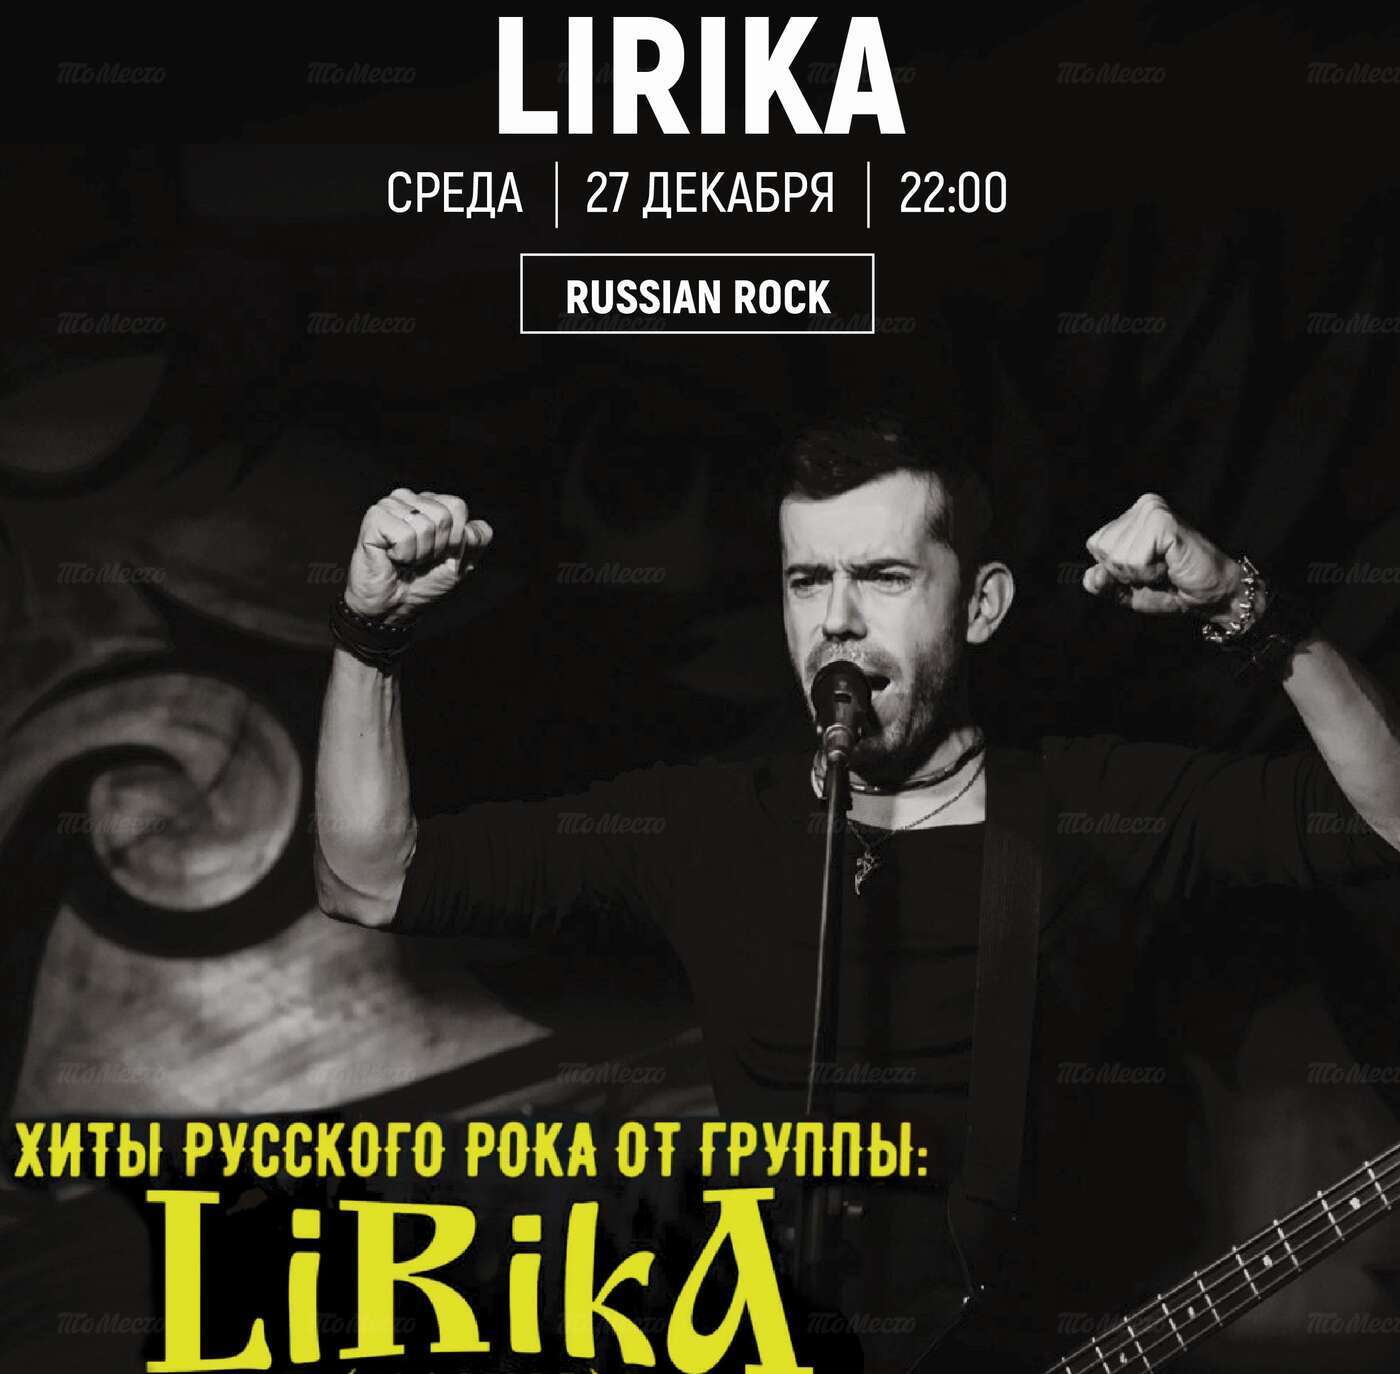 Lirika Band